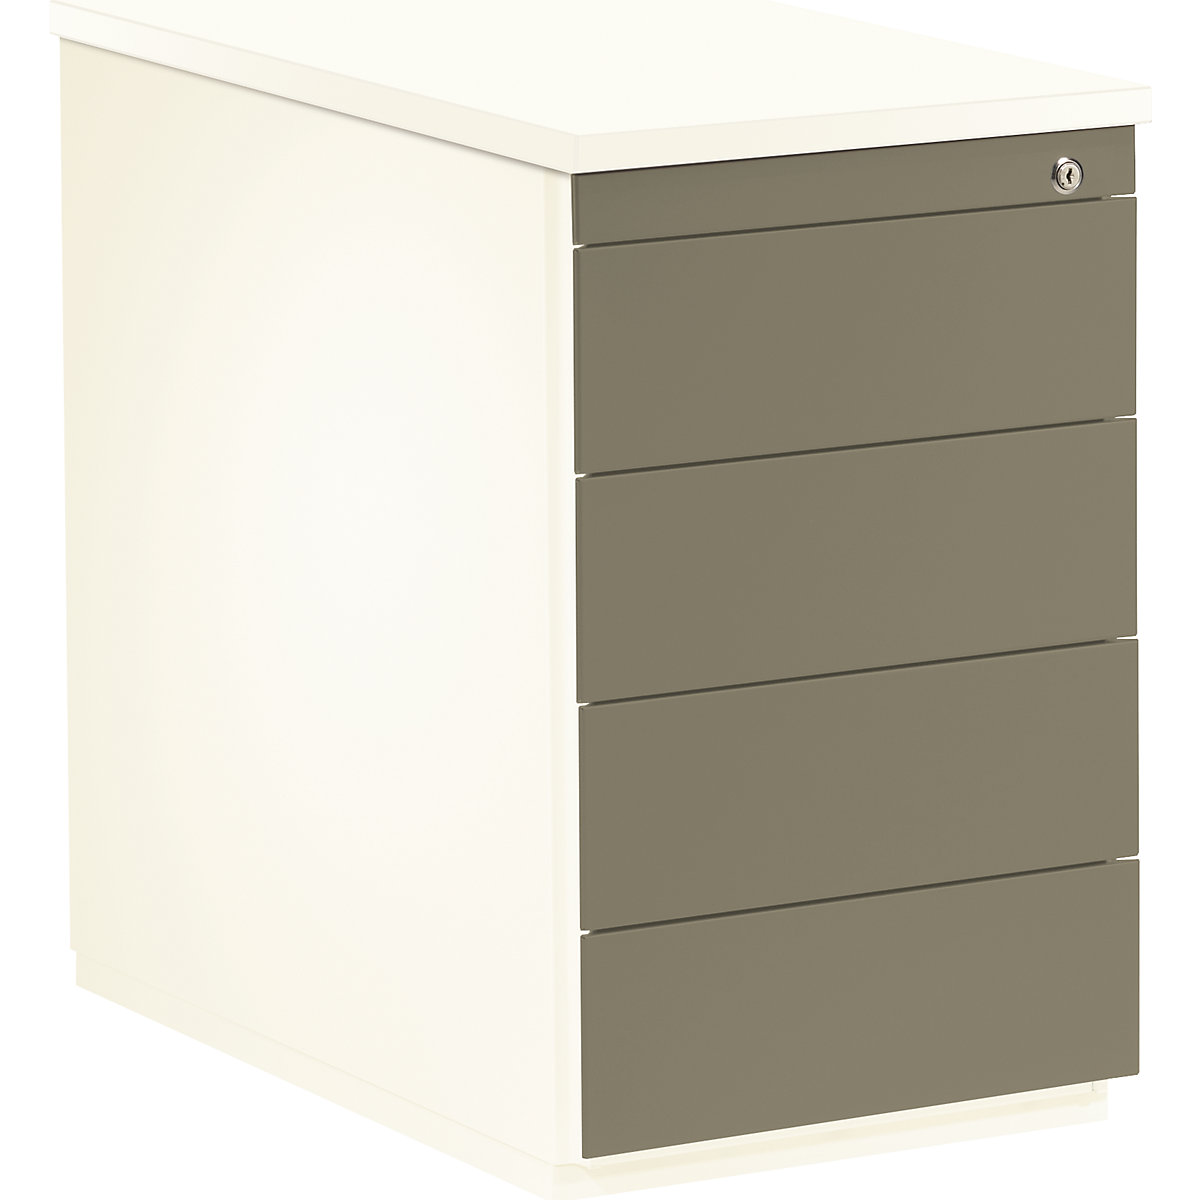 mauser – Casetieră cu sertare, î. x ad. 720 x 800 mm, 4 sertare, alb pur / gri-bej / alb pur